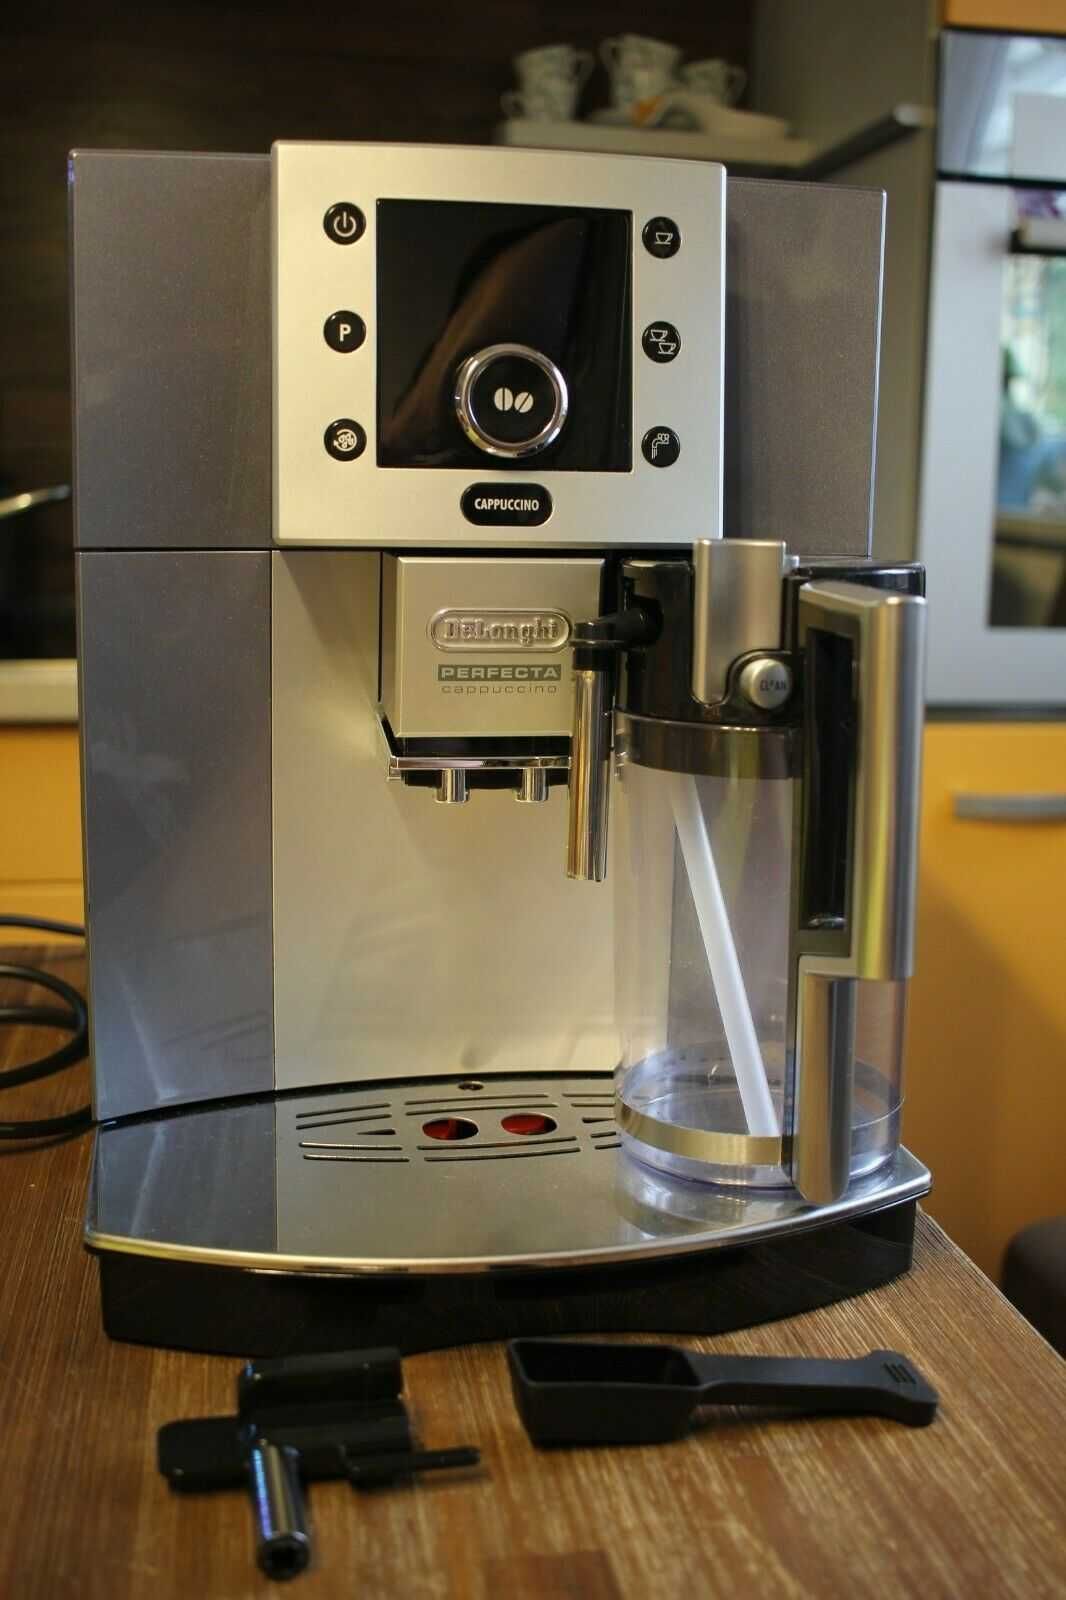 Кафе машини DeLonghi ESAM5500 Perfecta